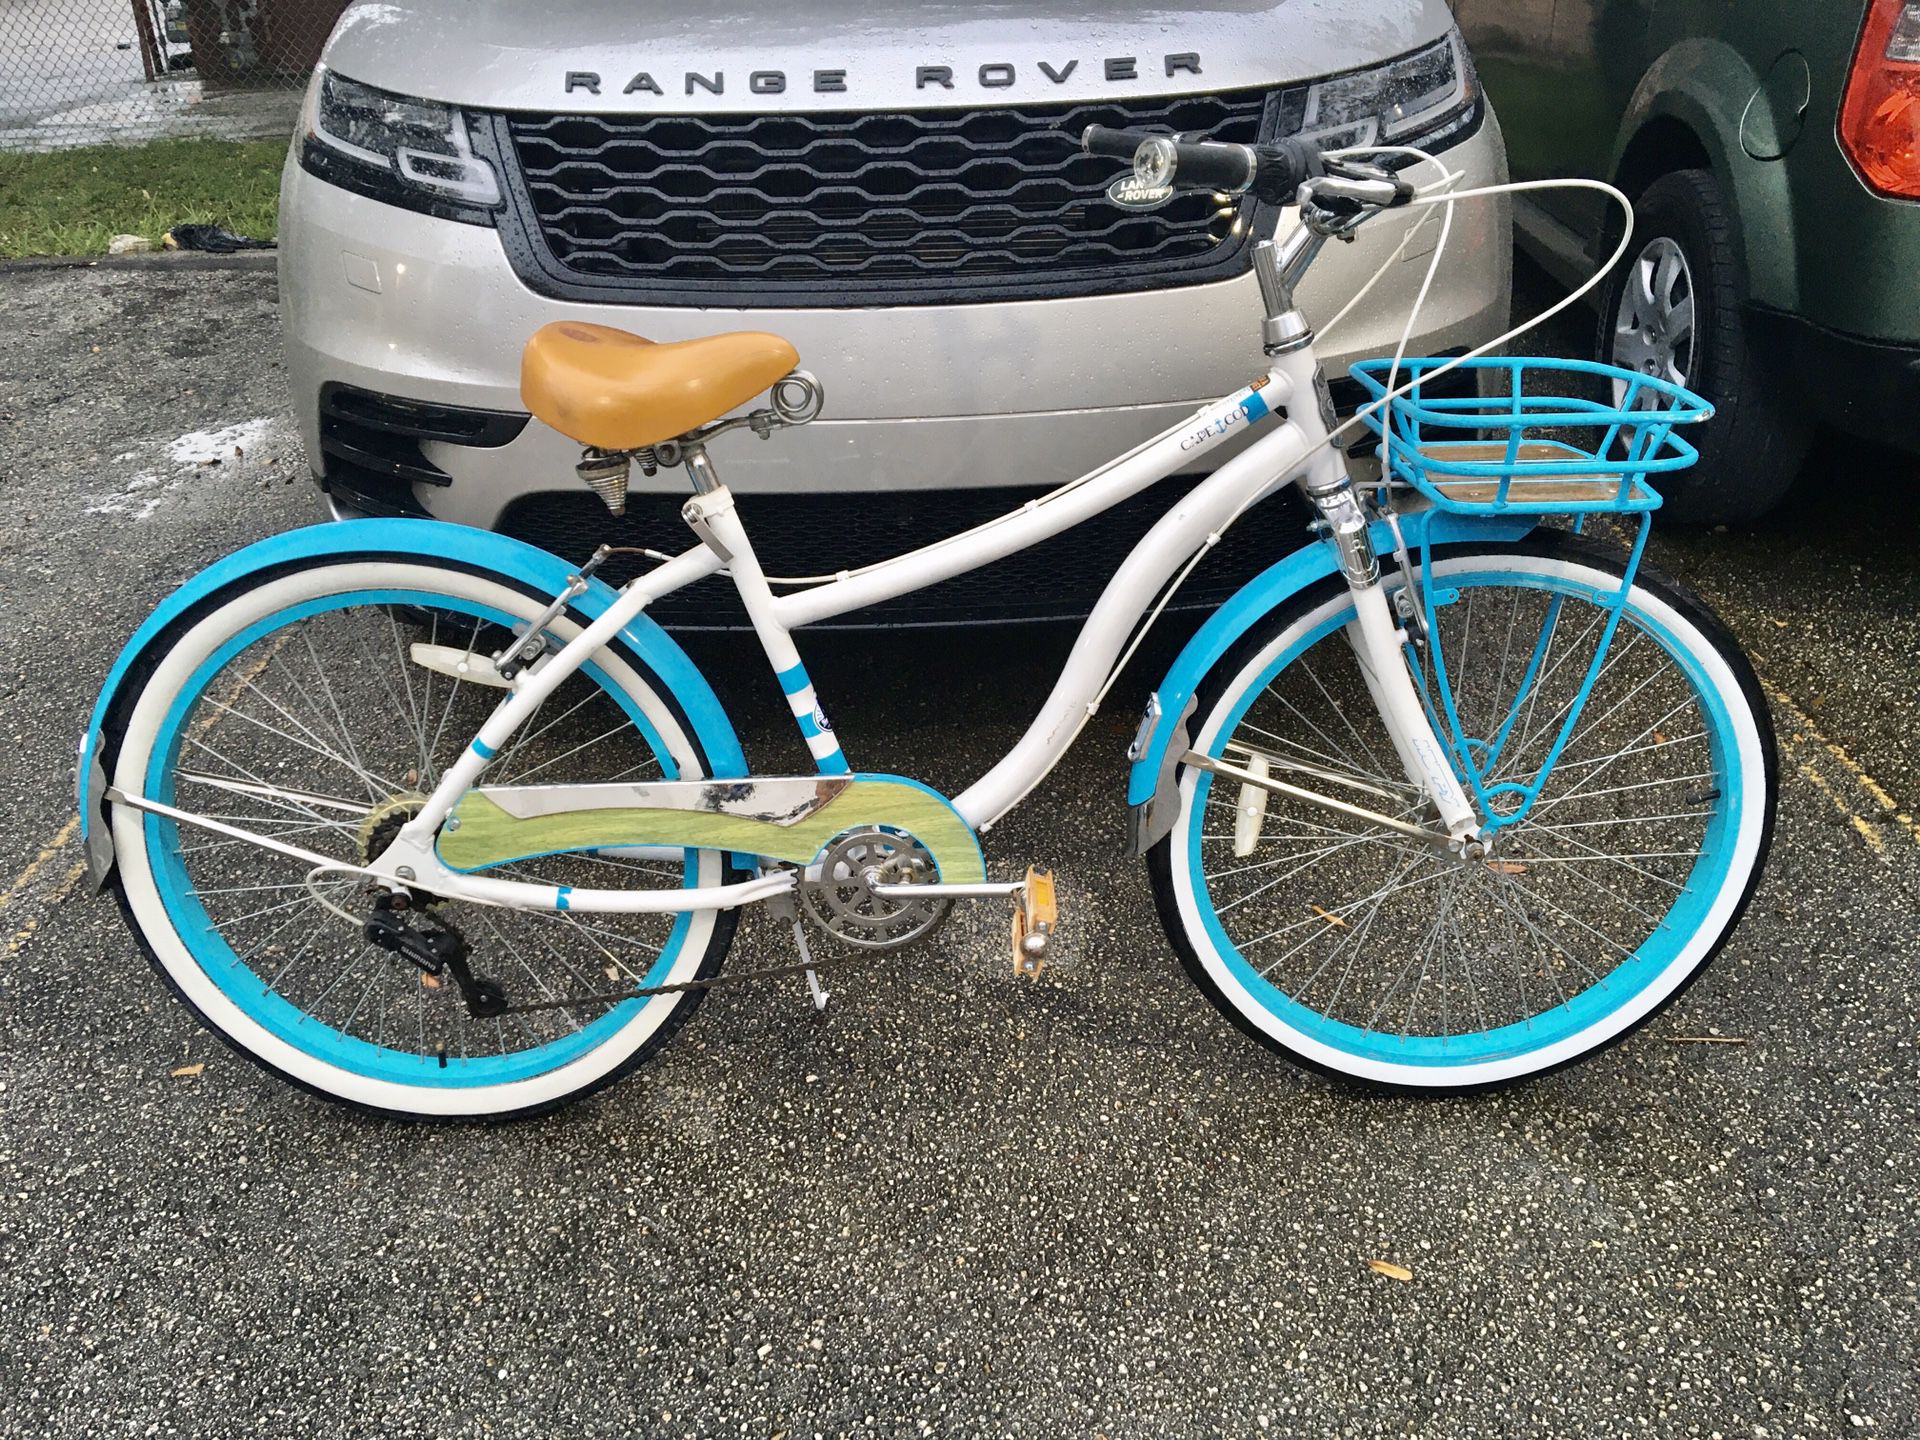 Huffy 26" Cape Code Newbury 7-Speed Cruiser Bike, White/Blue $130 MIAMI